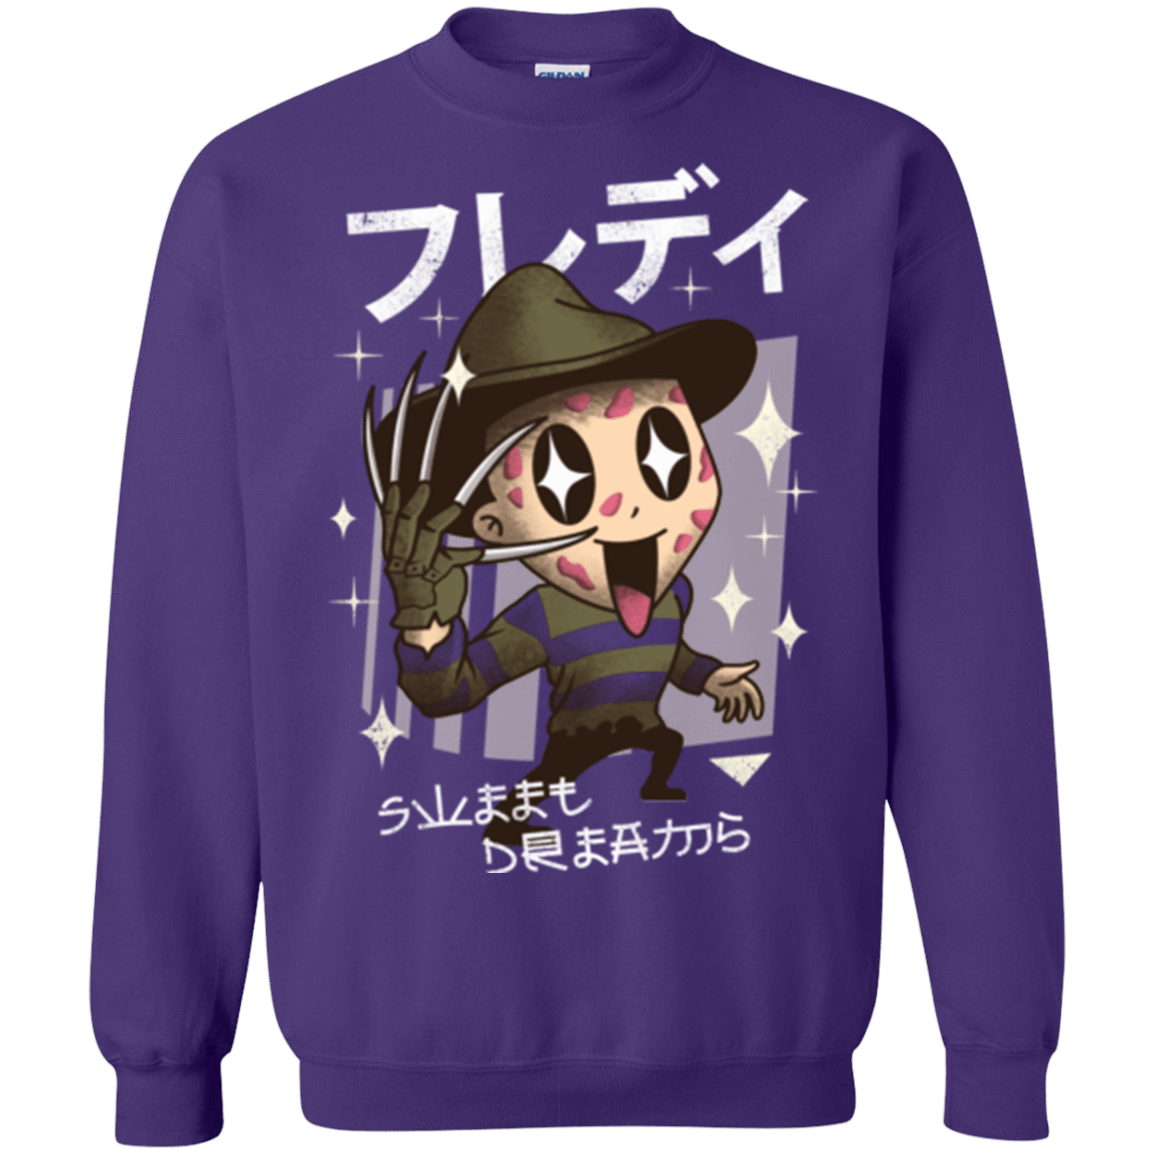 Sweatshirts Purple / Small Kawaii Dreams Crewneck Sweatshirt